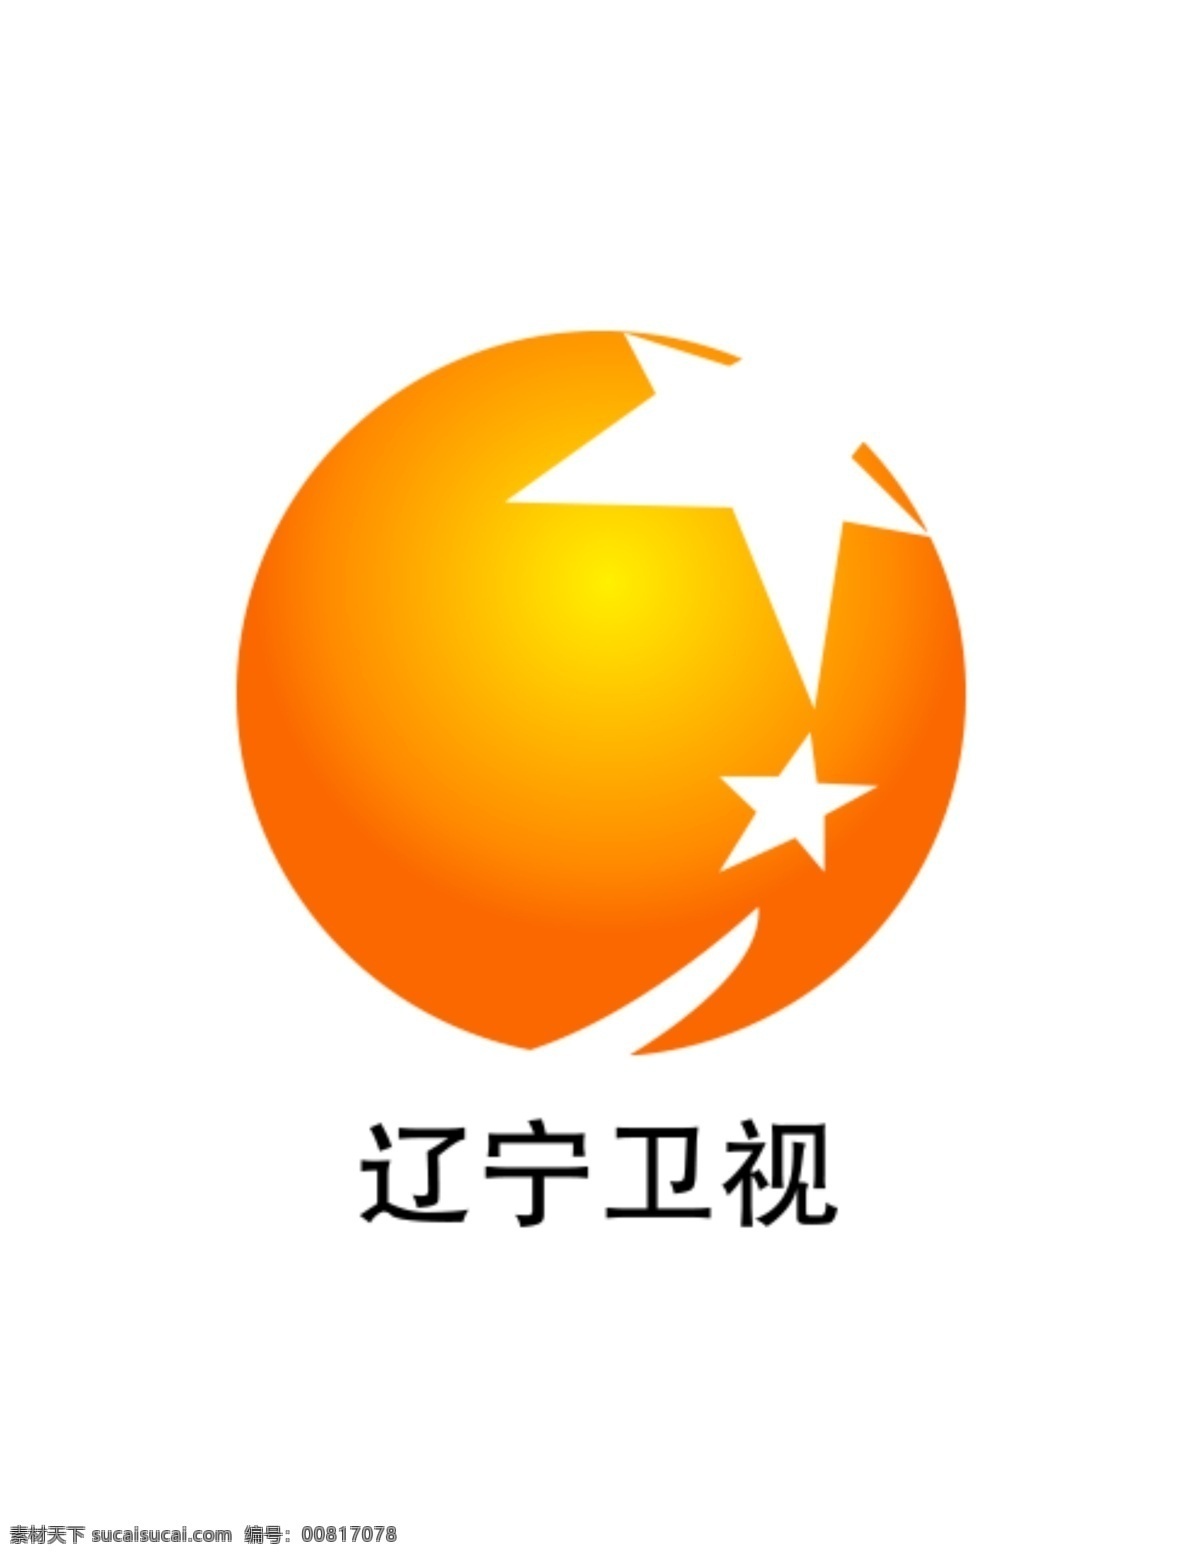 辽宁卫视 logo 辽宁卫视标志 辽宁卫视台标 辽宁台标 辽宁电视台